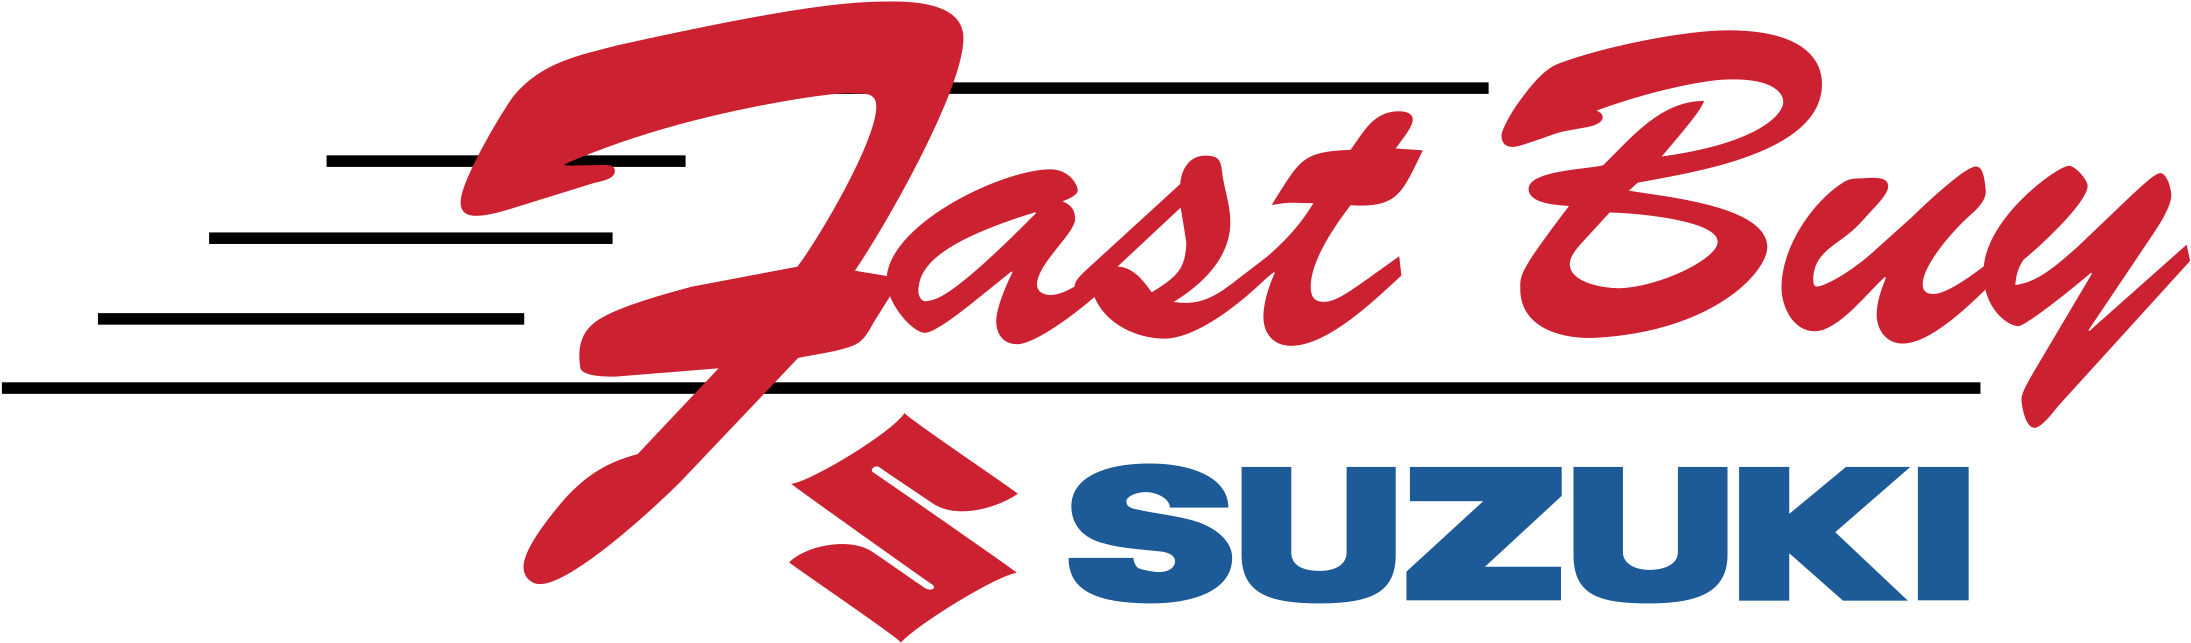 Suzuki Fast Buy Logo Design PNG